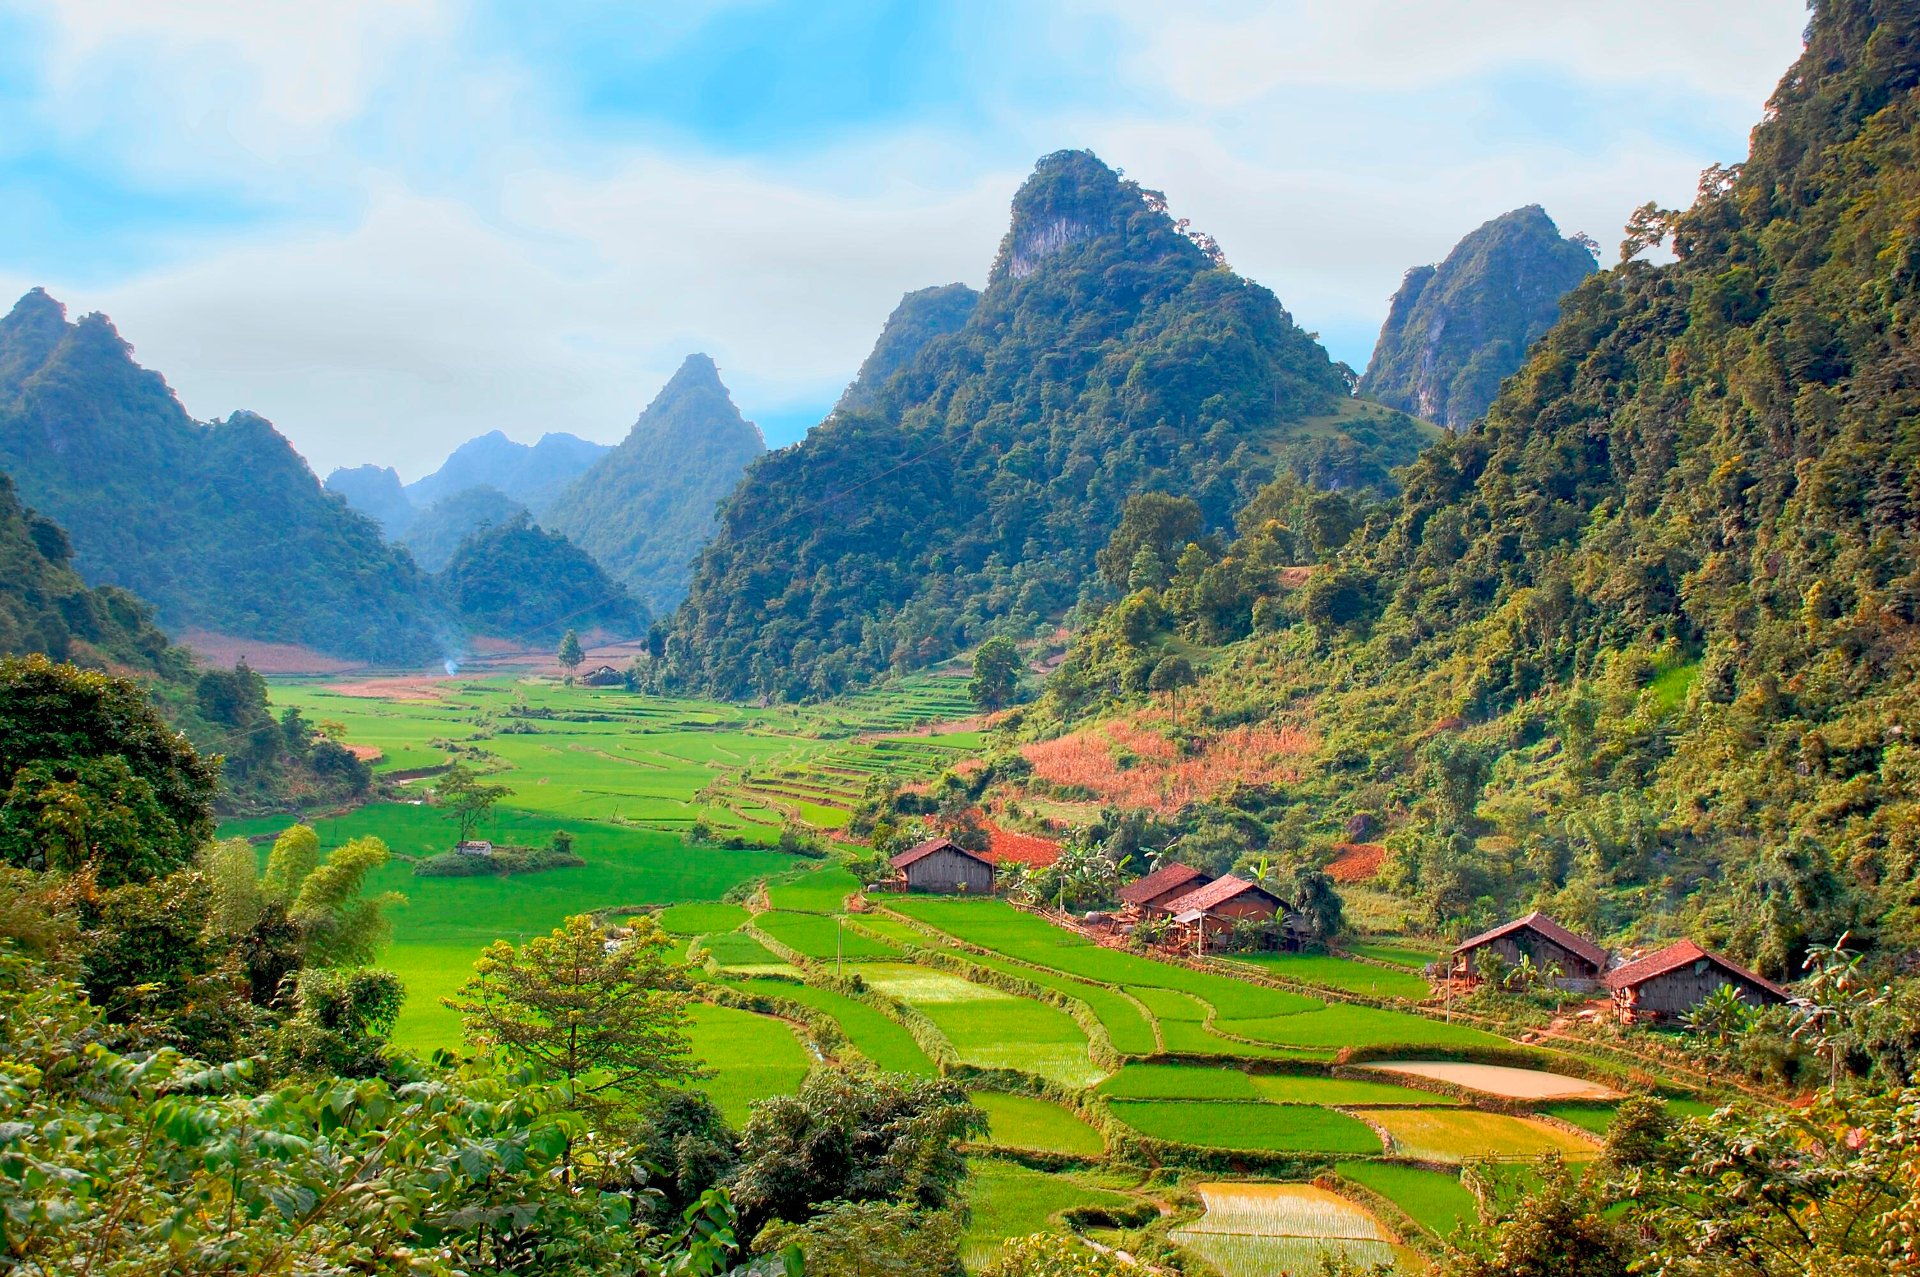 Village And Rice Fields In Vietnam